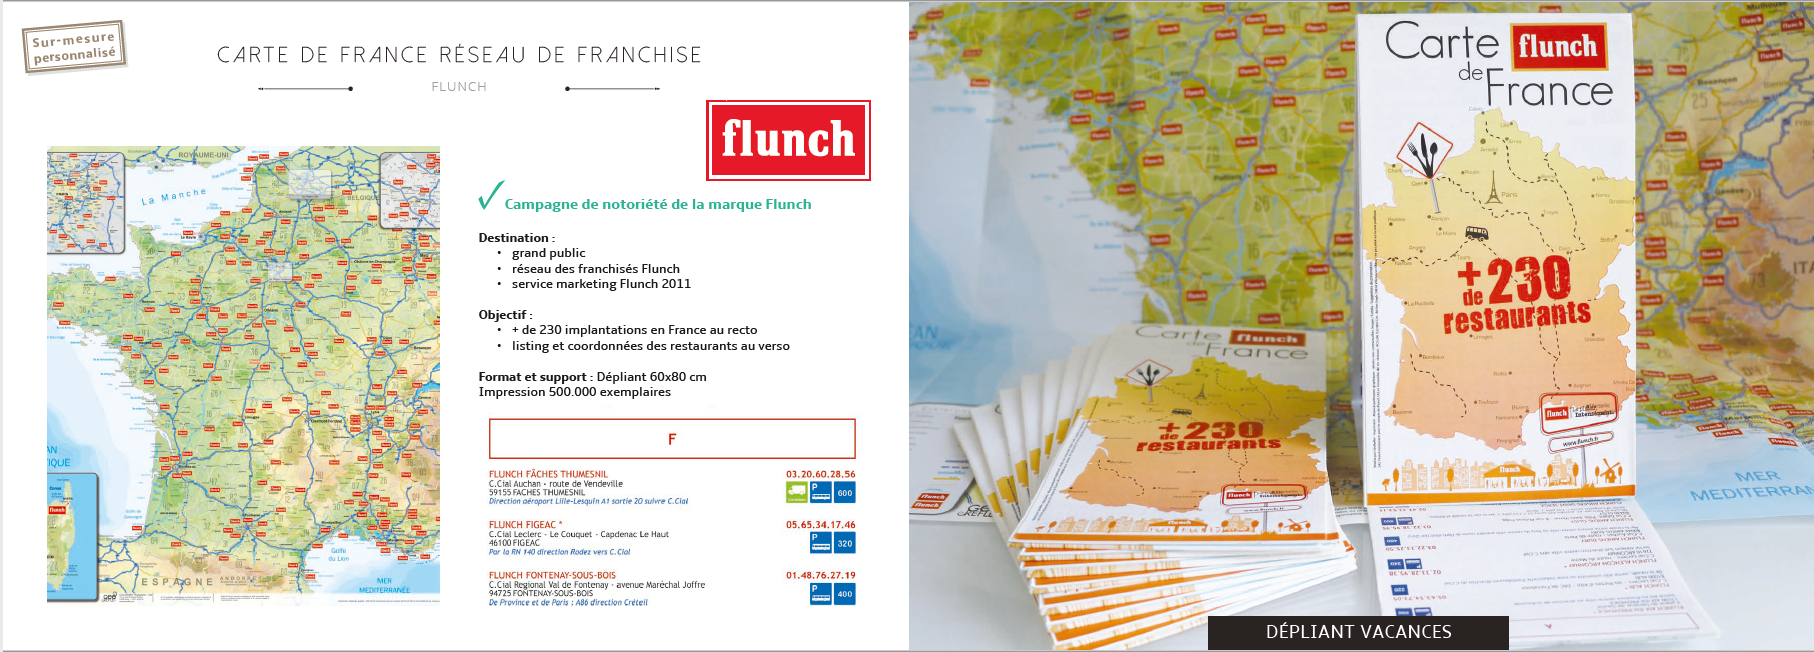 Carte de France géolocalisation de points mailing postal et publicité